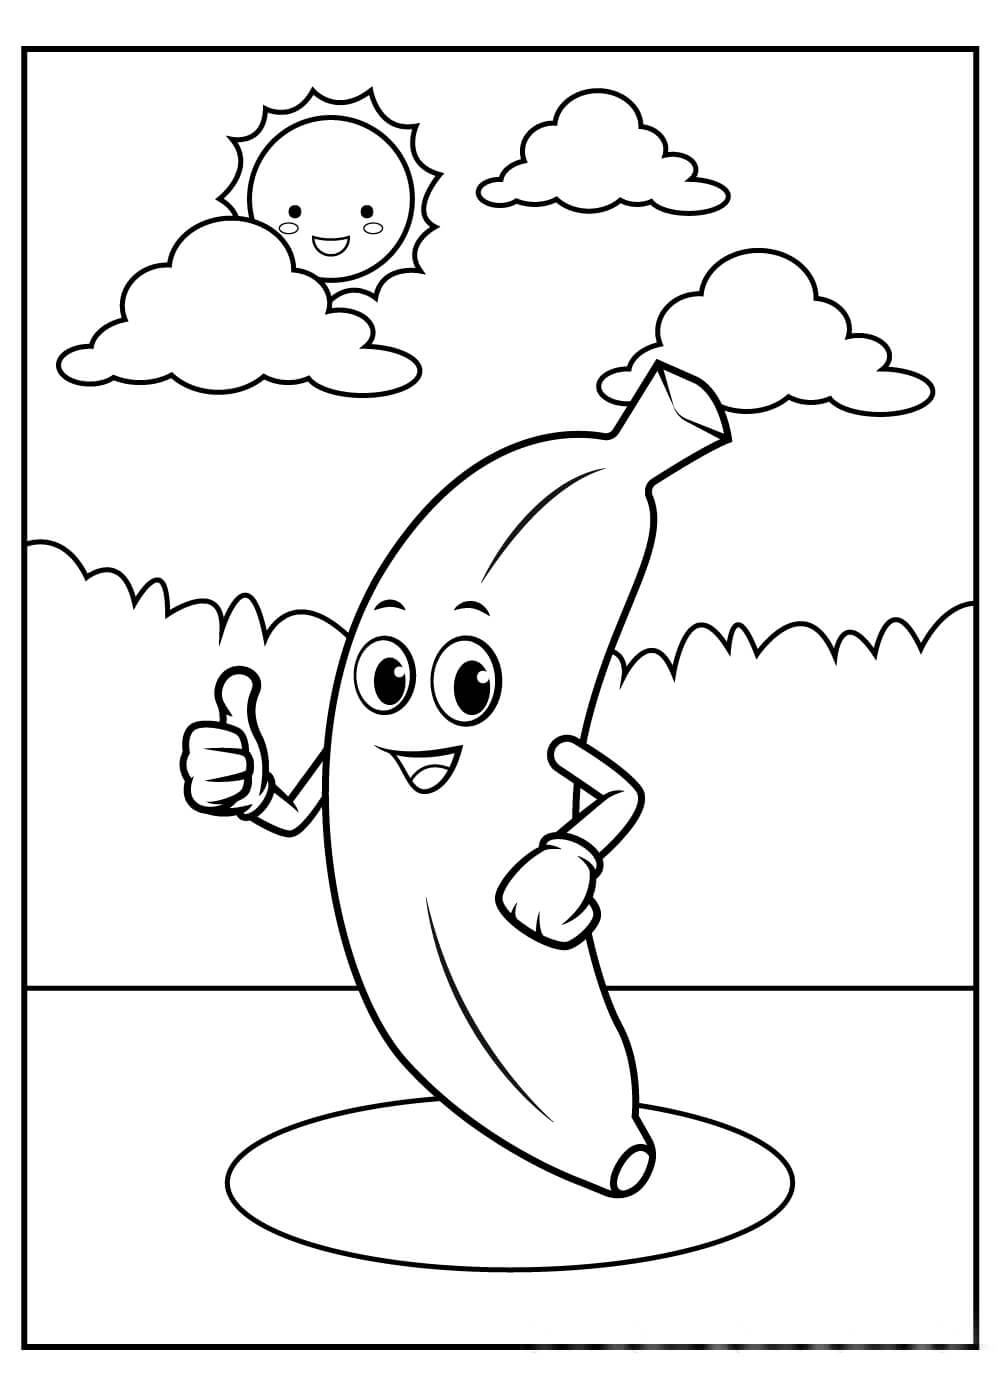 Banana Como Você para colorir